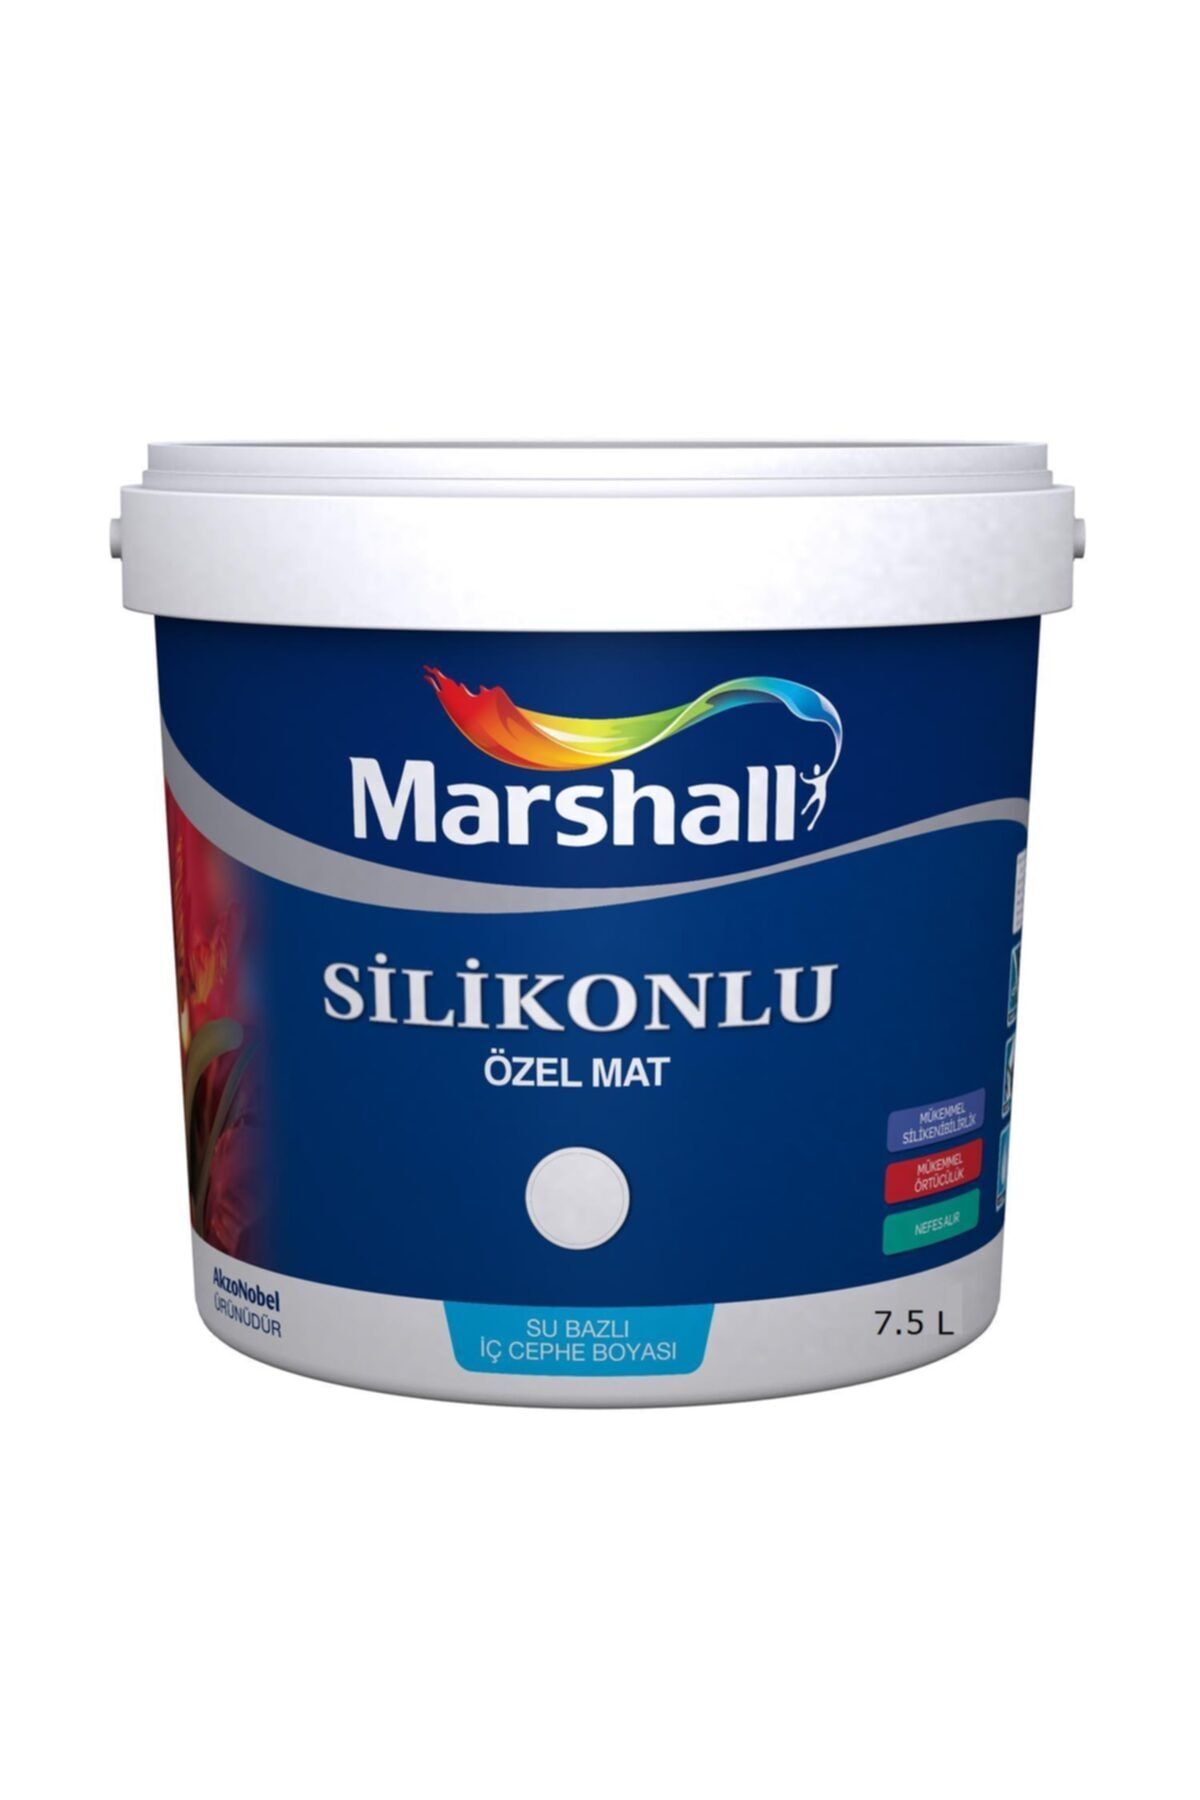 Marshall Silikonlu Özel Mat Iç Cephe Boyası 7.5 Lt. (10 Kg) Tütsü